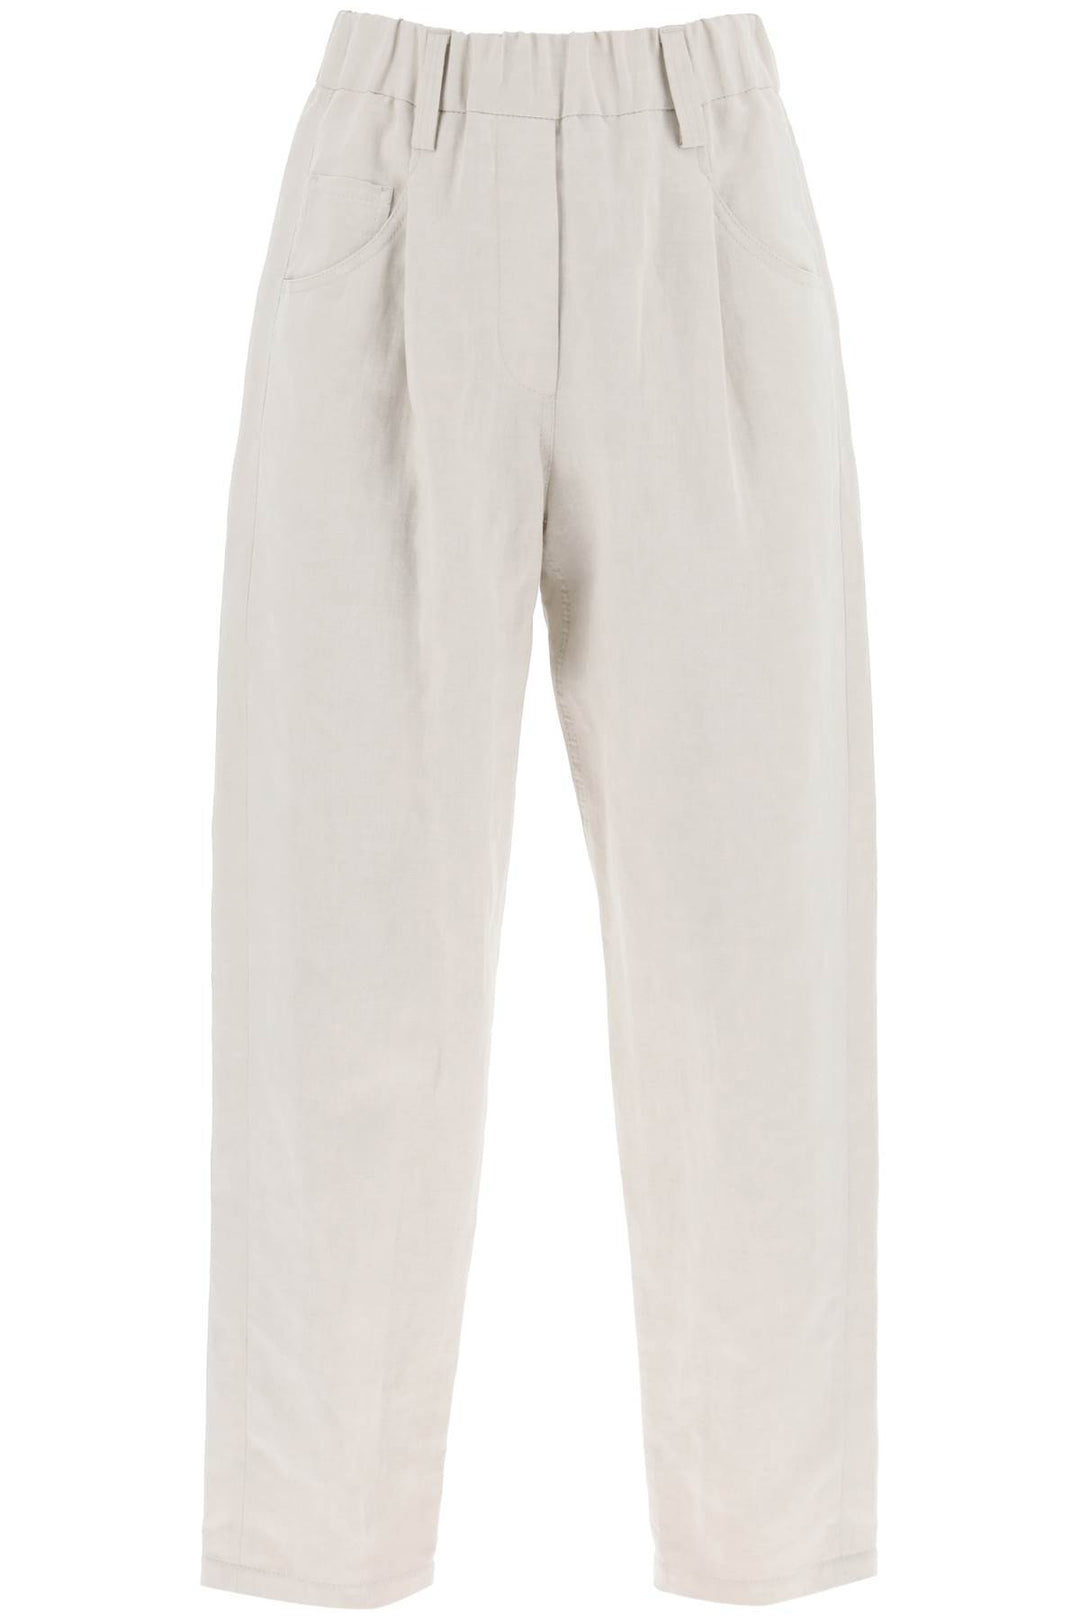 Brunello Cucinelli Linen And Cotton Canvas Pants.   Beige